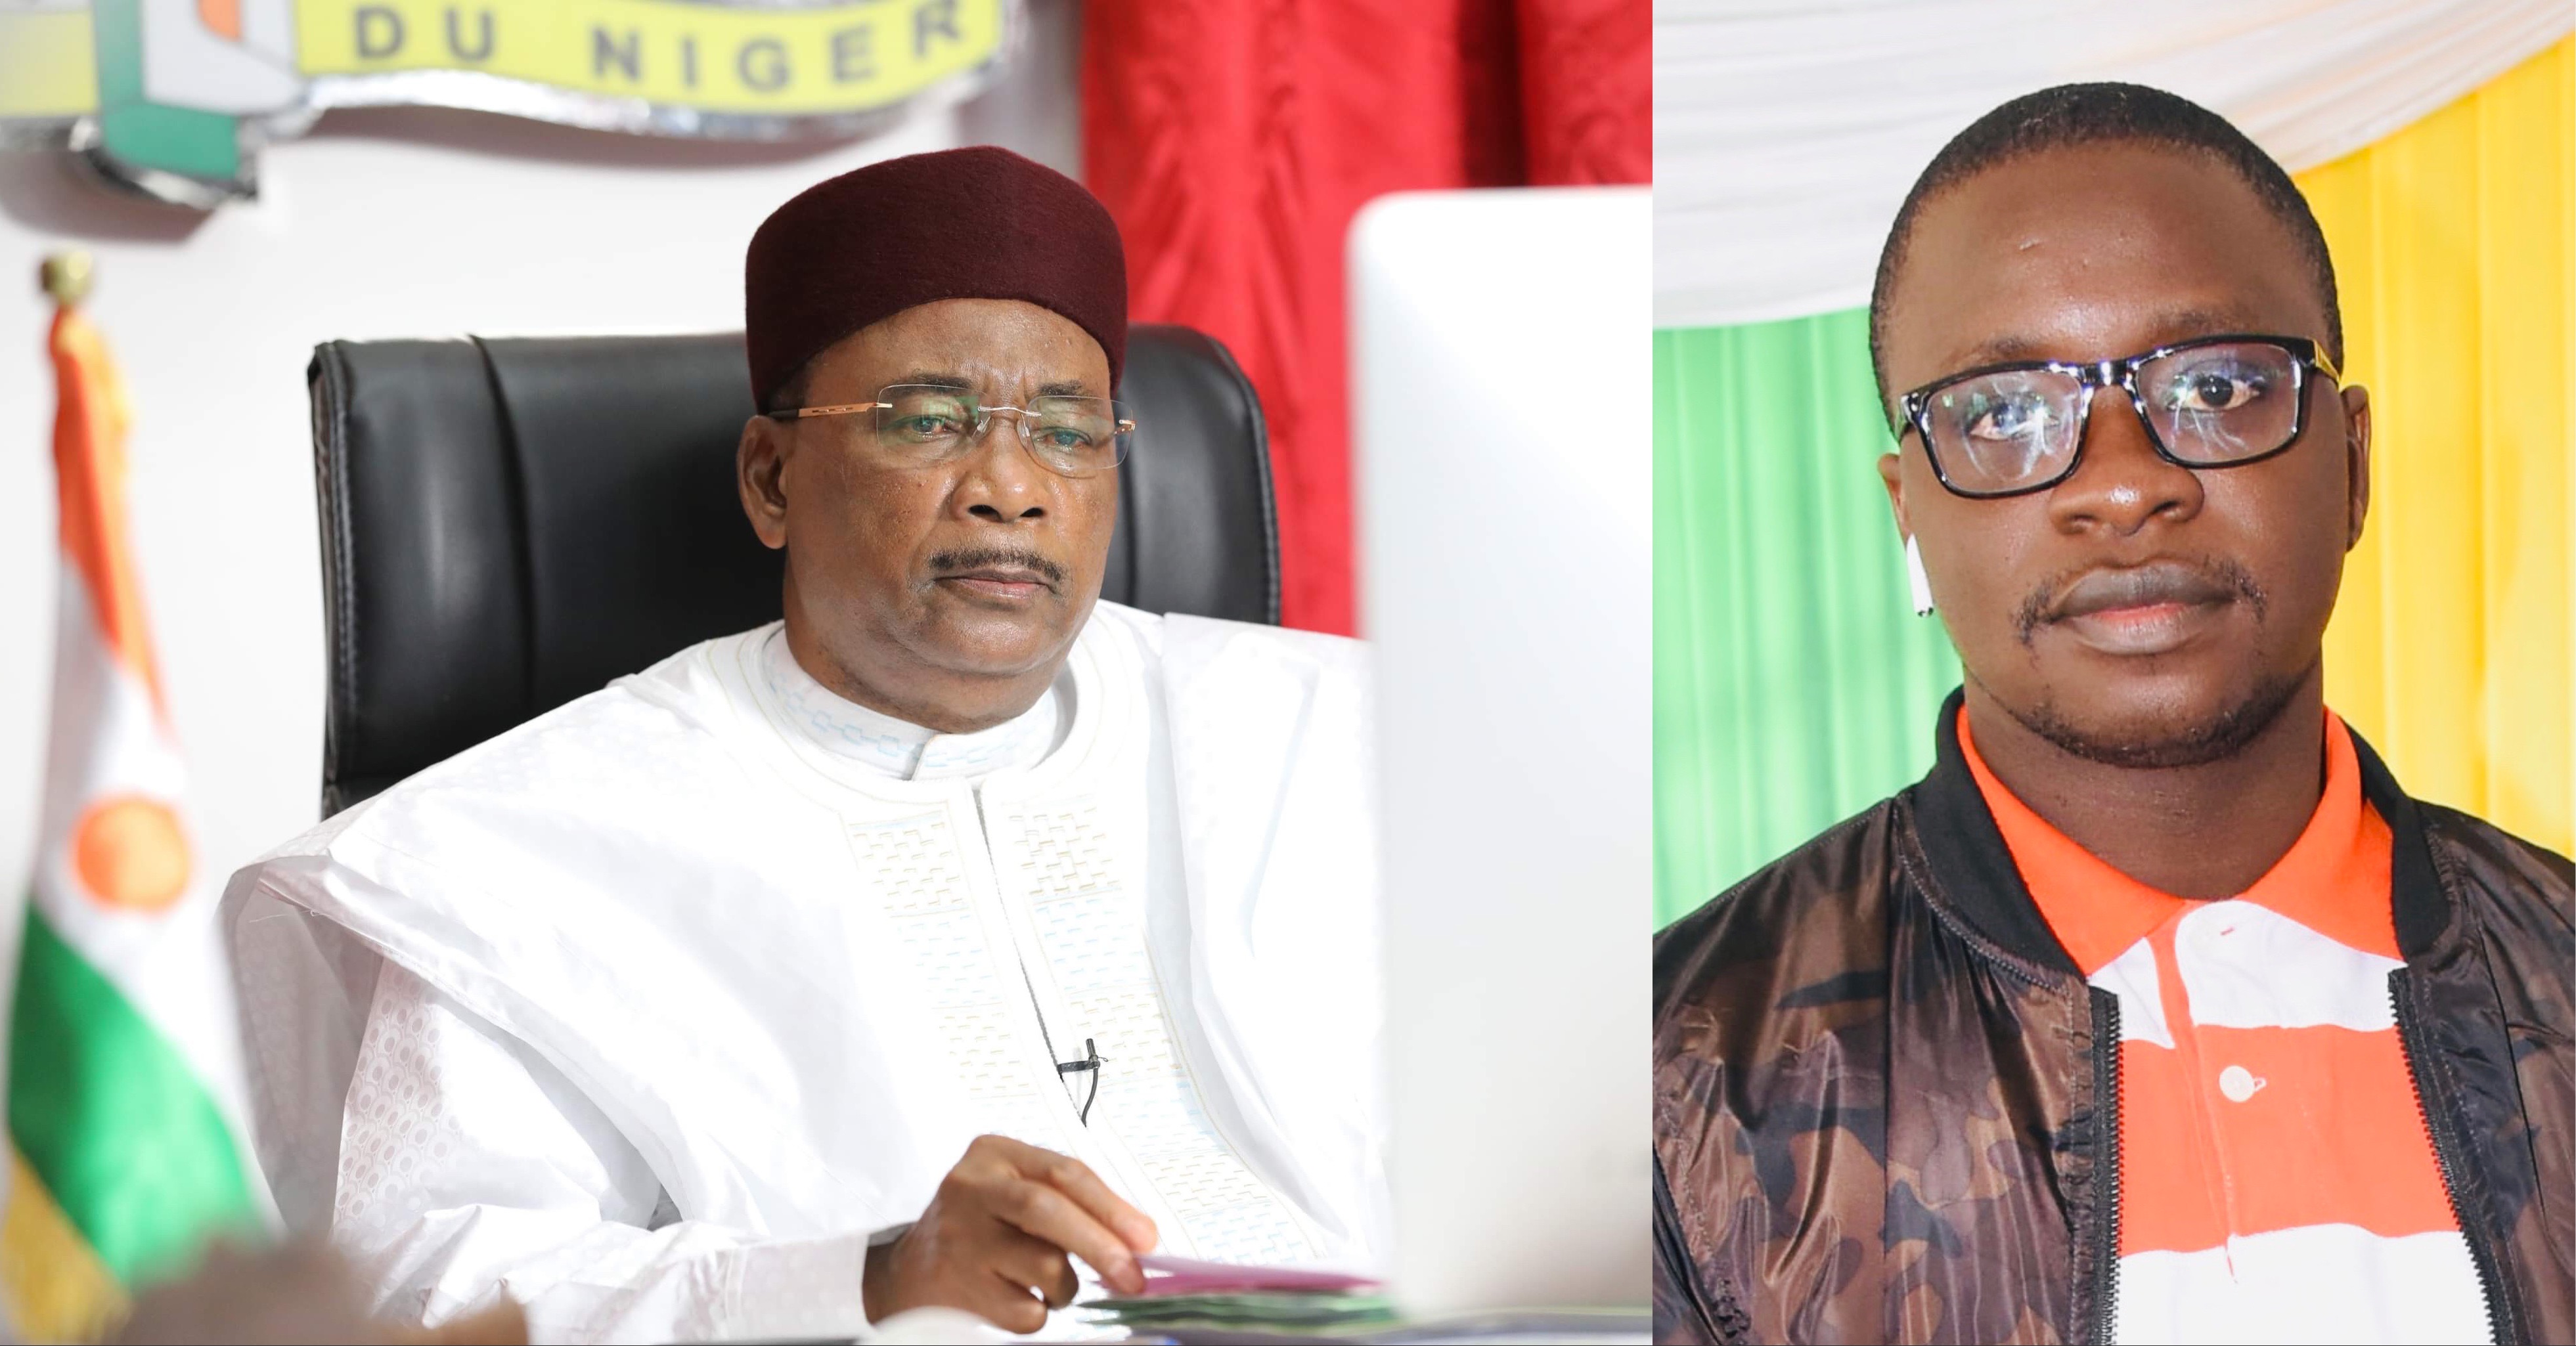 Mahamadou Issoufou président de la République du Niger 2011 - 2021 et Sidy Djimby NDAO